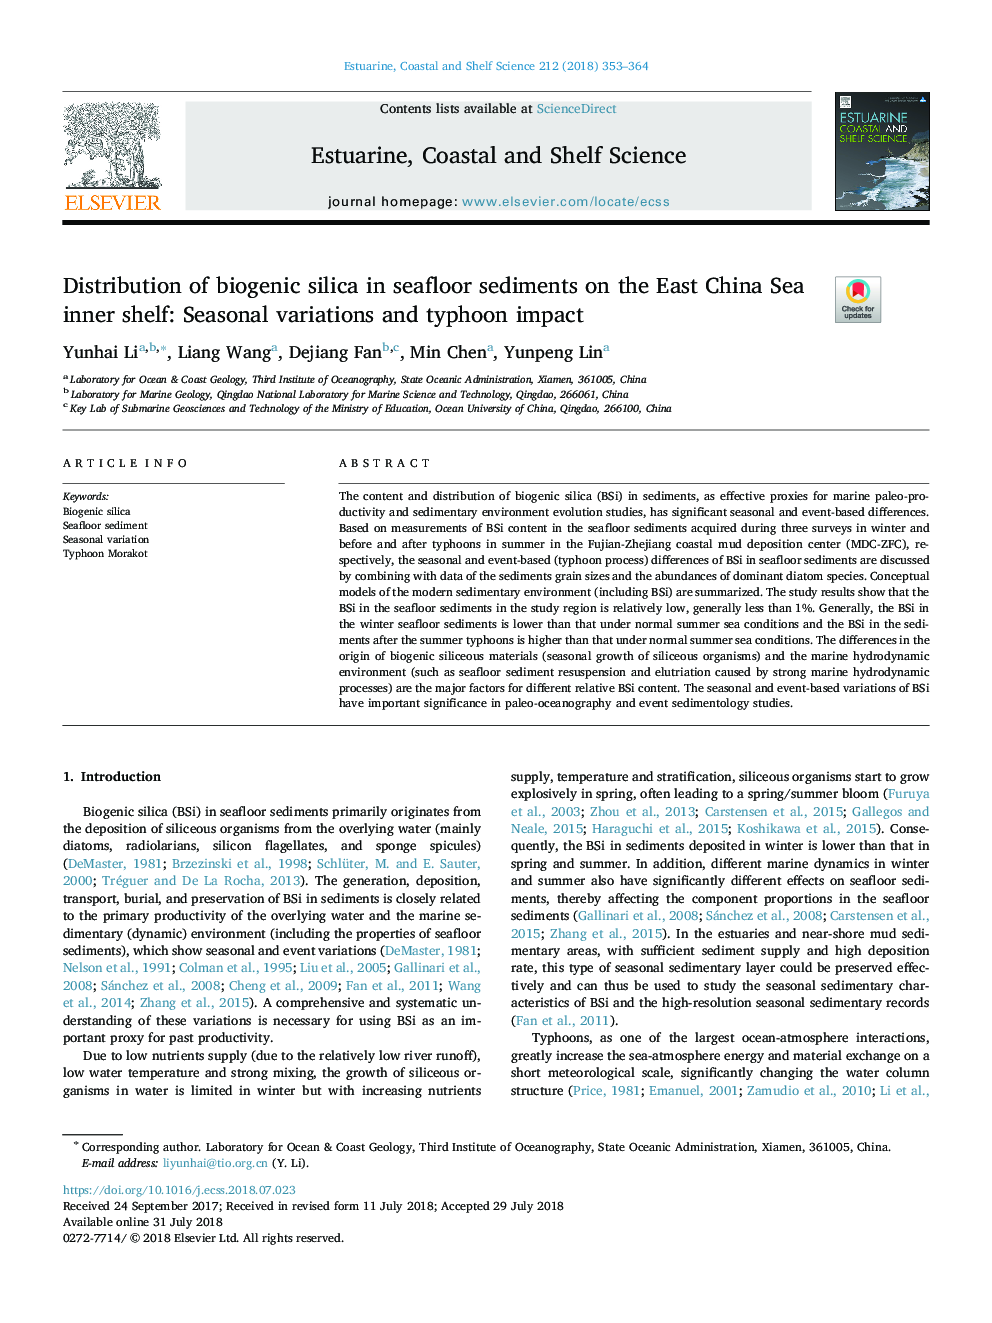 توزیع سیلیس بیوژنیک در رسوبات دریایی در قفسه داخلی دریای چین: تغییرات فصلی و تاثیر 